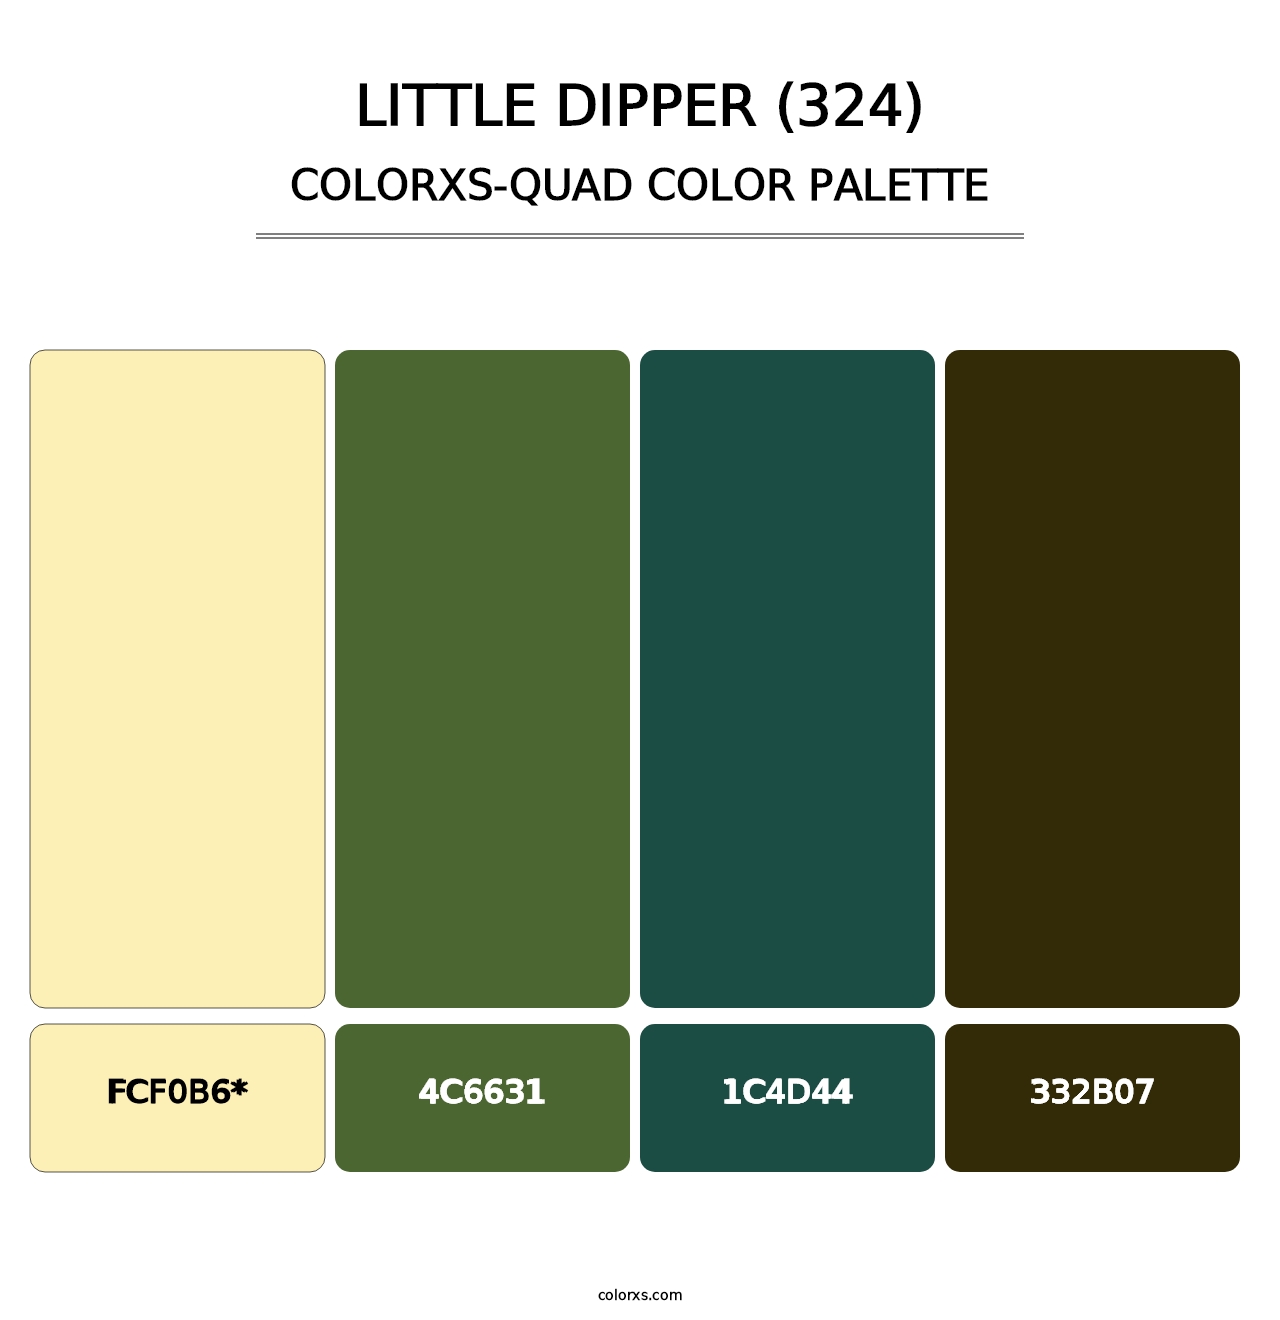 Little Dipper (324) - Colorxs Quad Palette